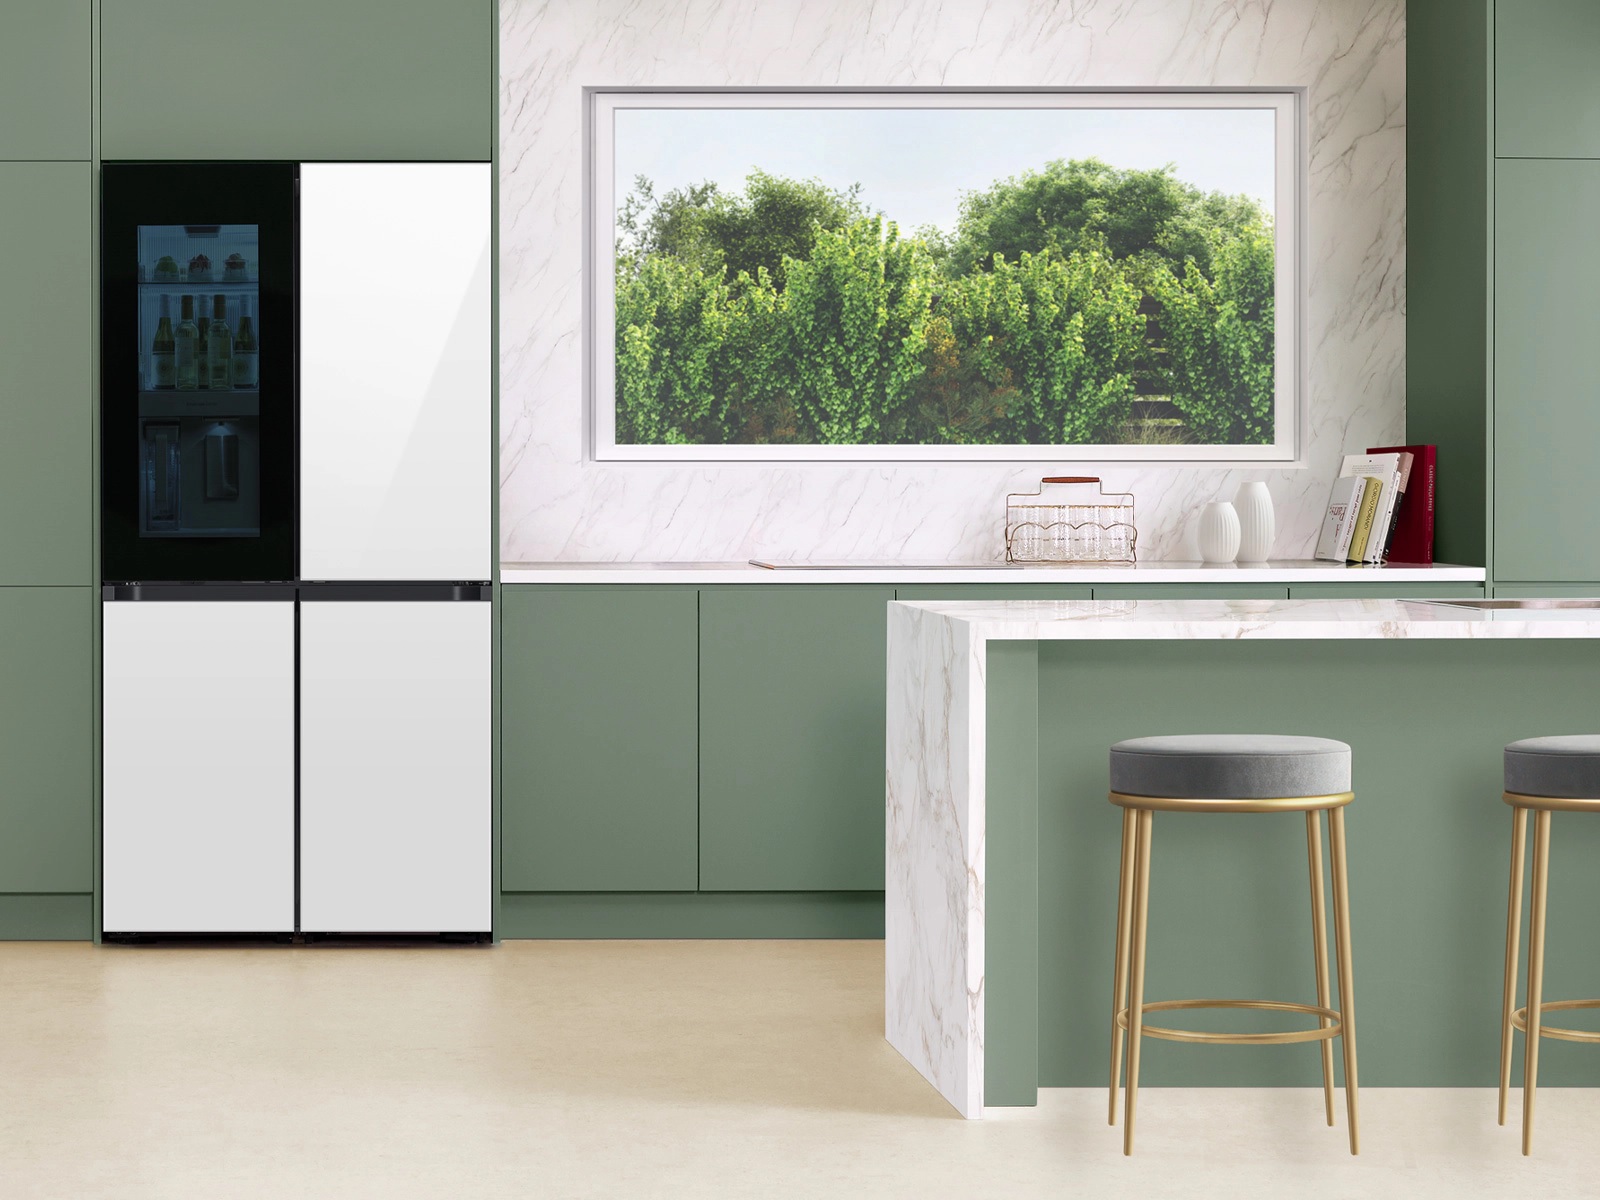 Refrigerador Samsung Bespoke Flex de 4 portas em uma cozinha.